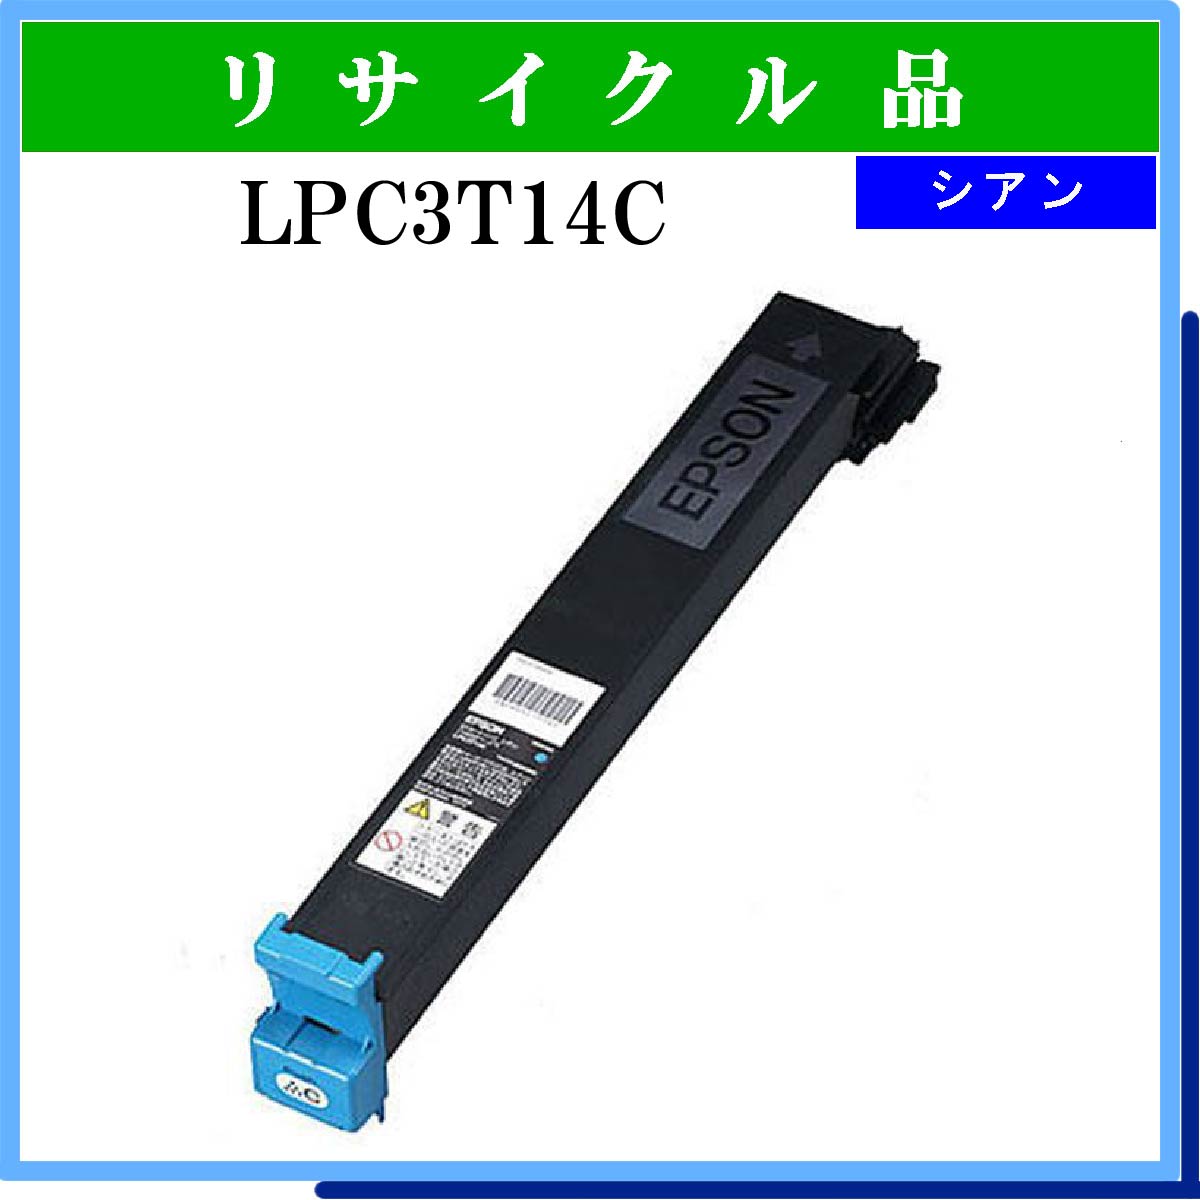 LPC3T14C